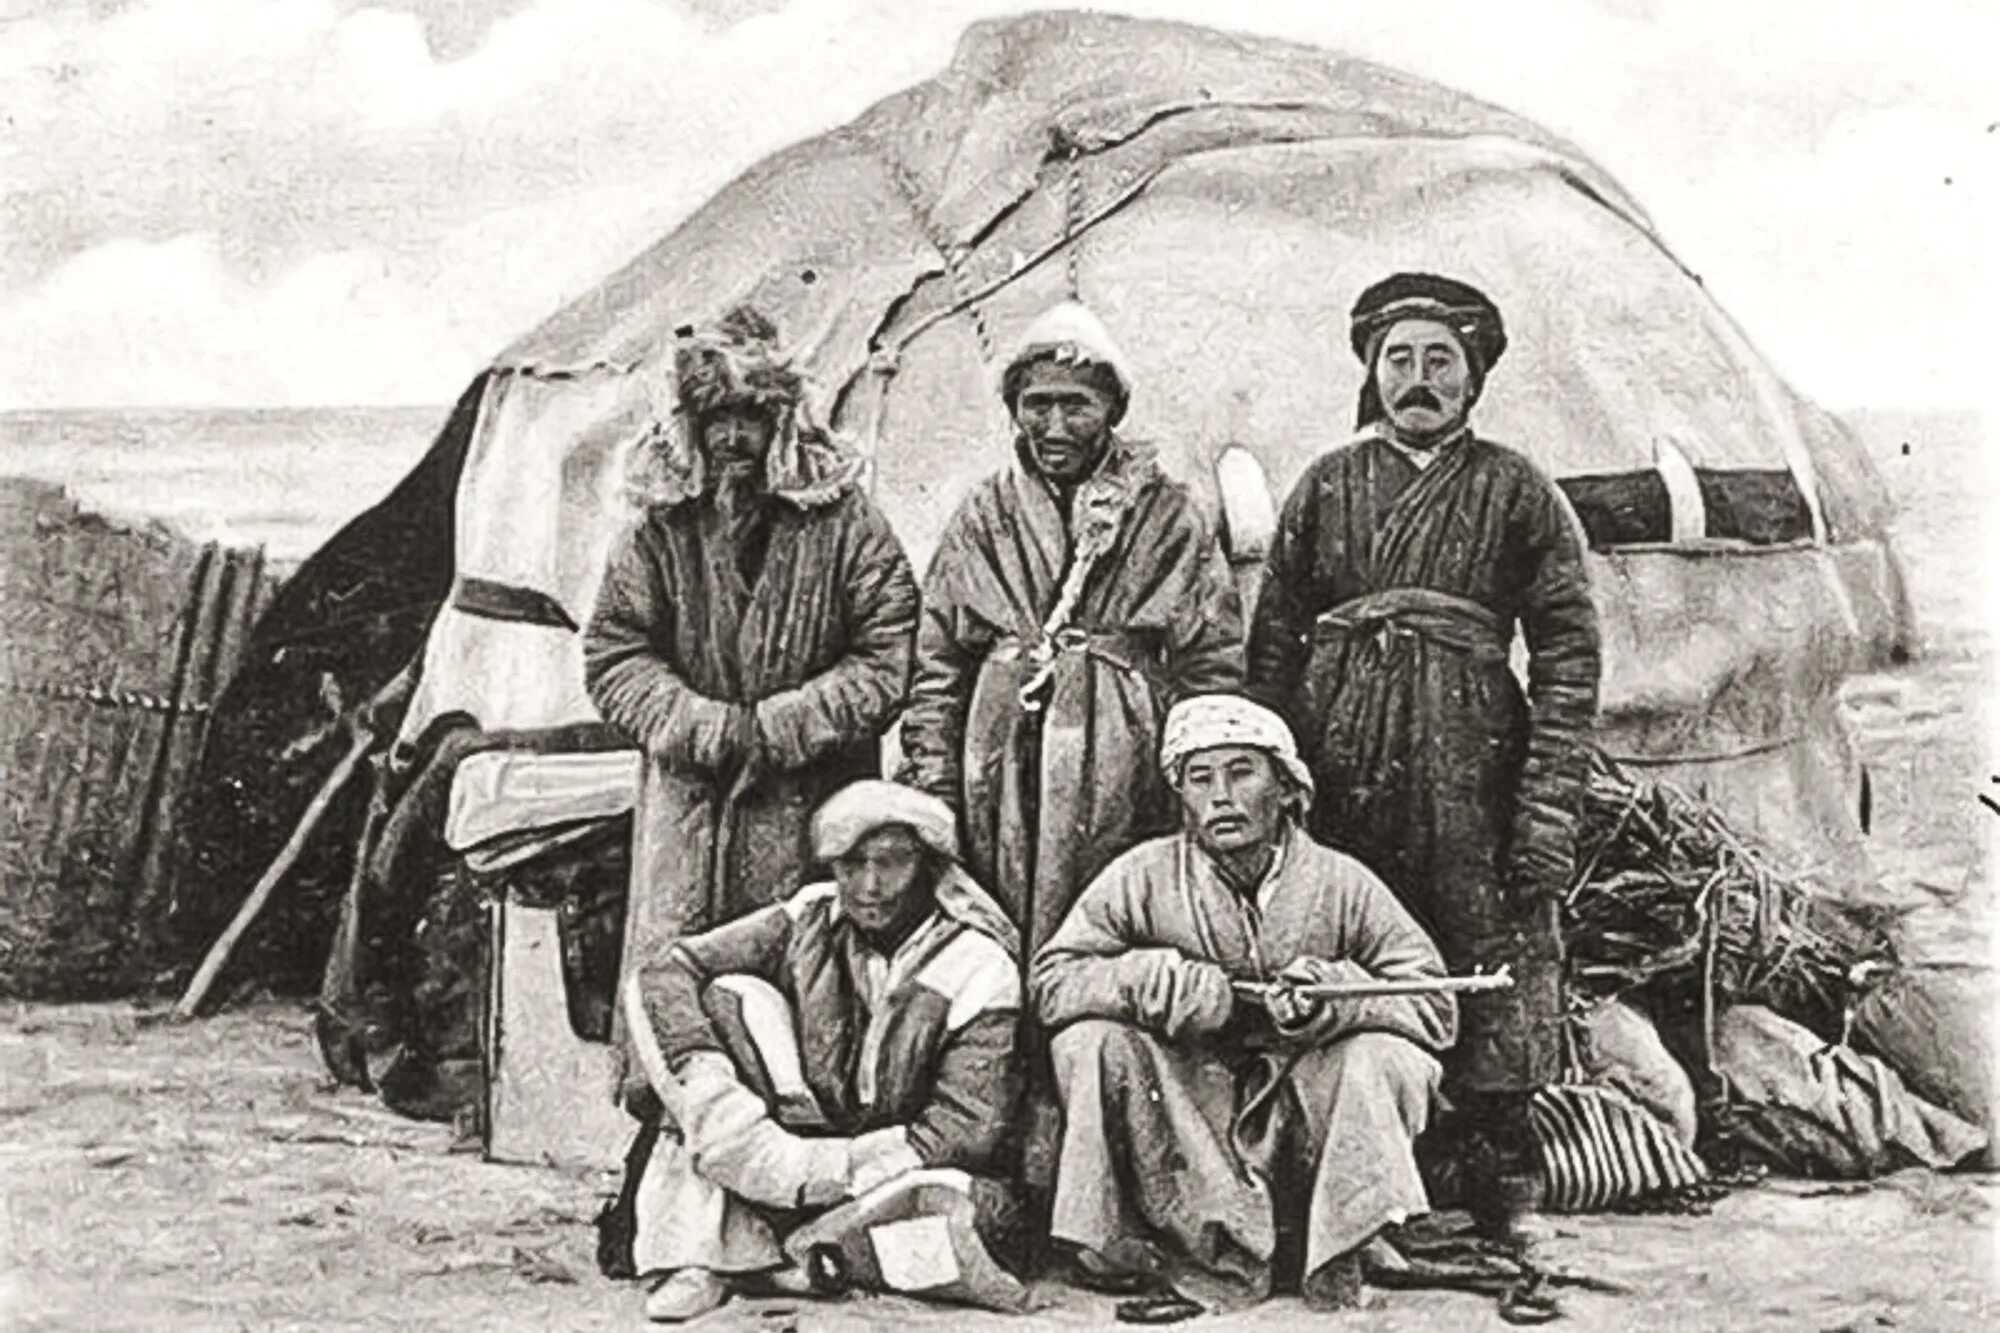 Юрты алтайцев 19 век. Киргизские кочевники 19 век. Киргизы Азии 19 век. Казахская степь 19 век. Два тюркских народа урала